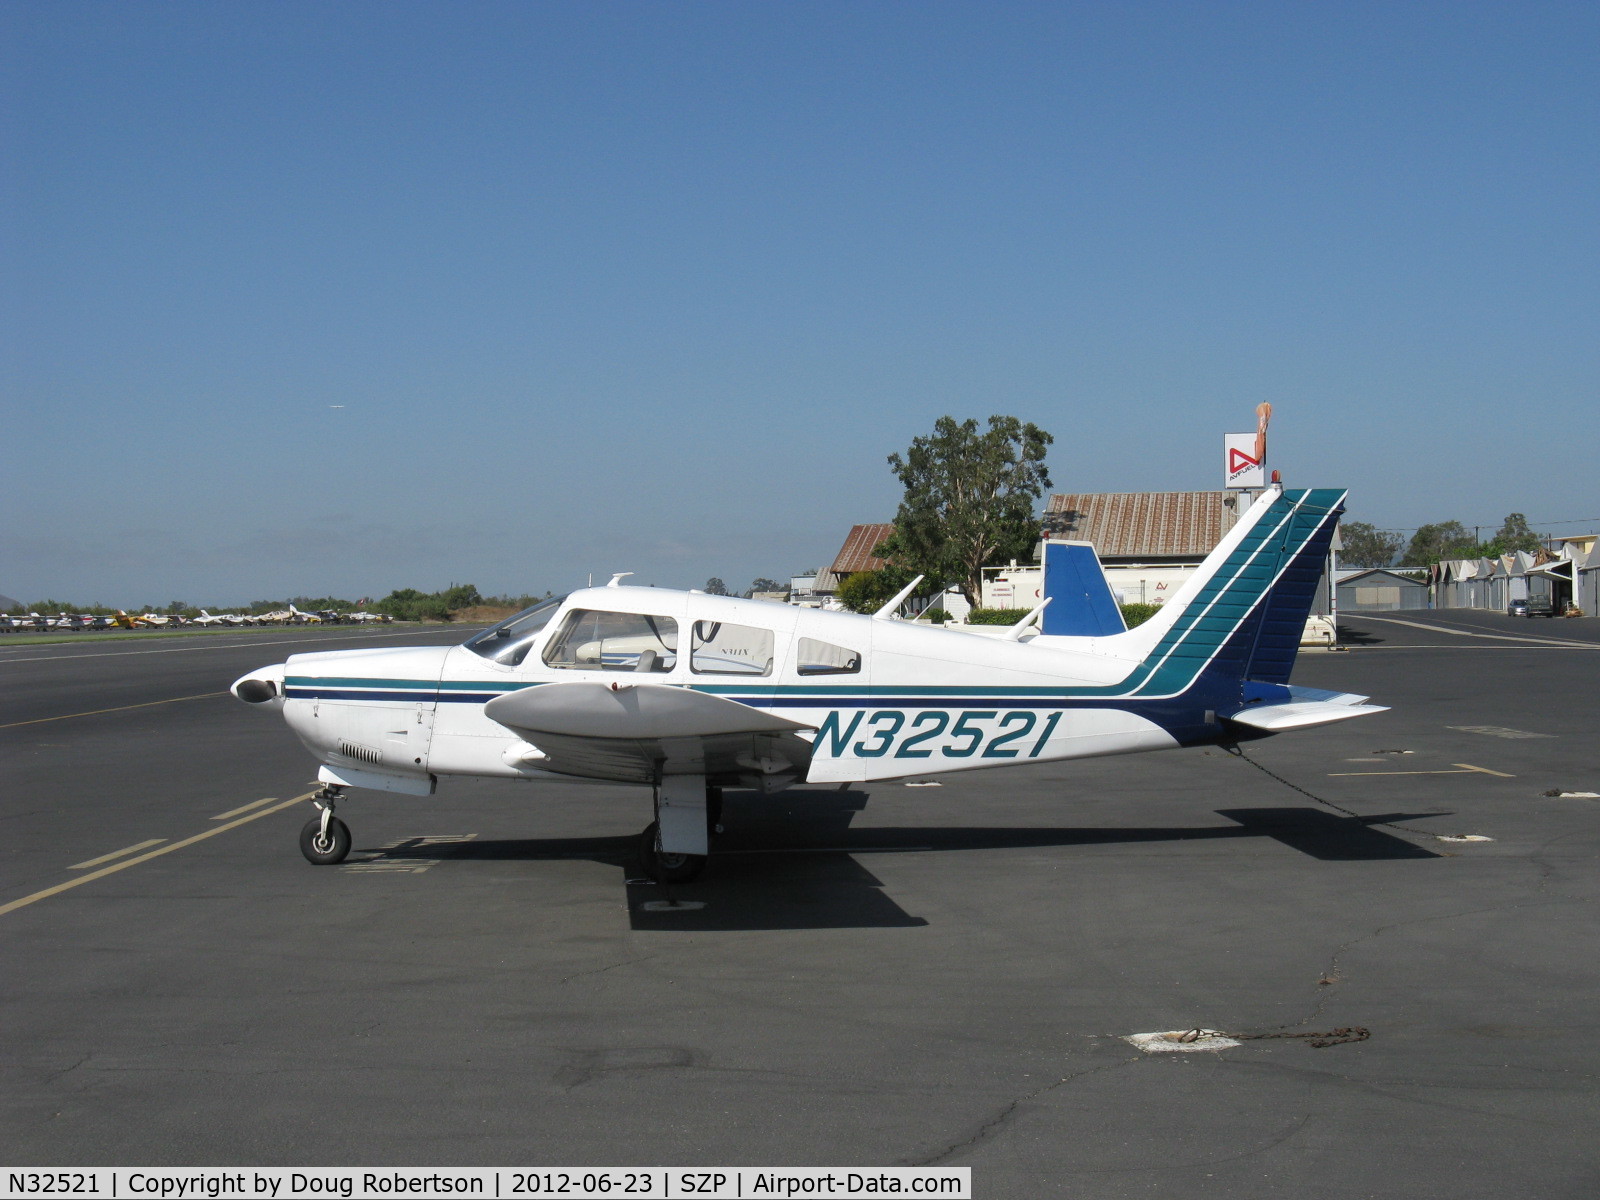 N32521, 1974 Piper PA-28R-200 Cherokee Arrow C/N 28R-7535065, 1974 Piper PA-28R-200 ARROW, Lycoming IO-360-B1E 200 Hp